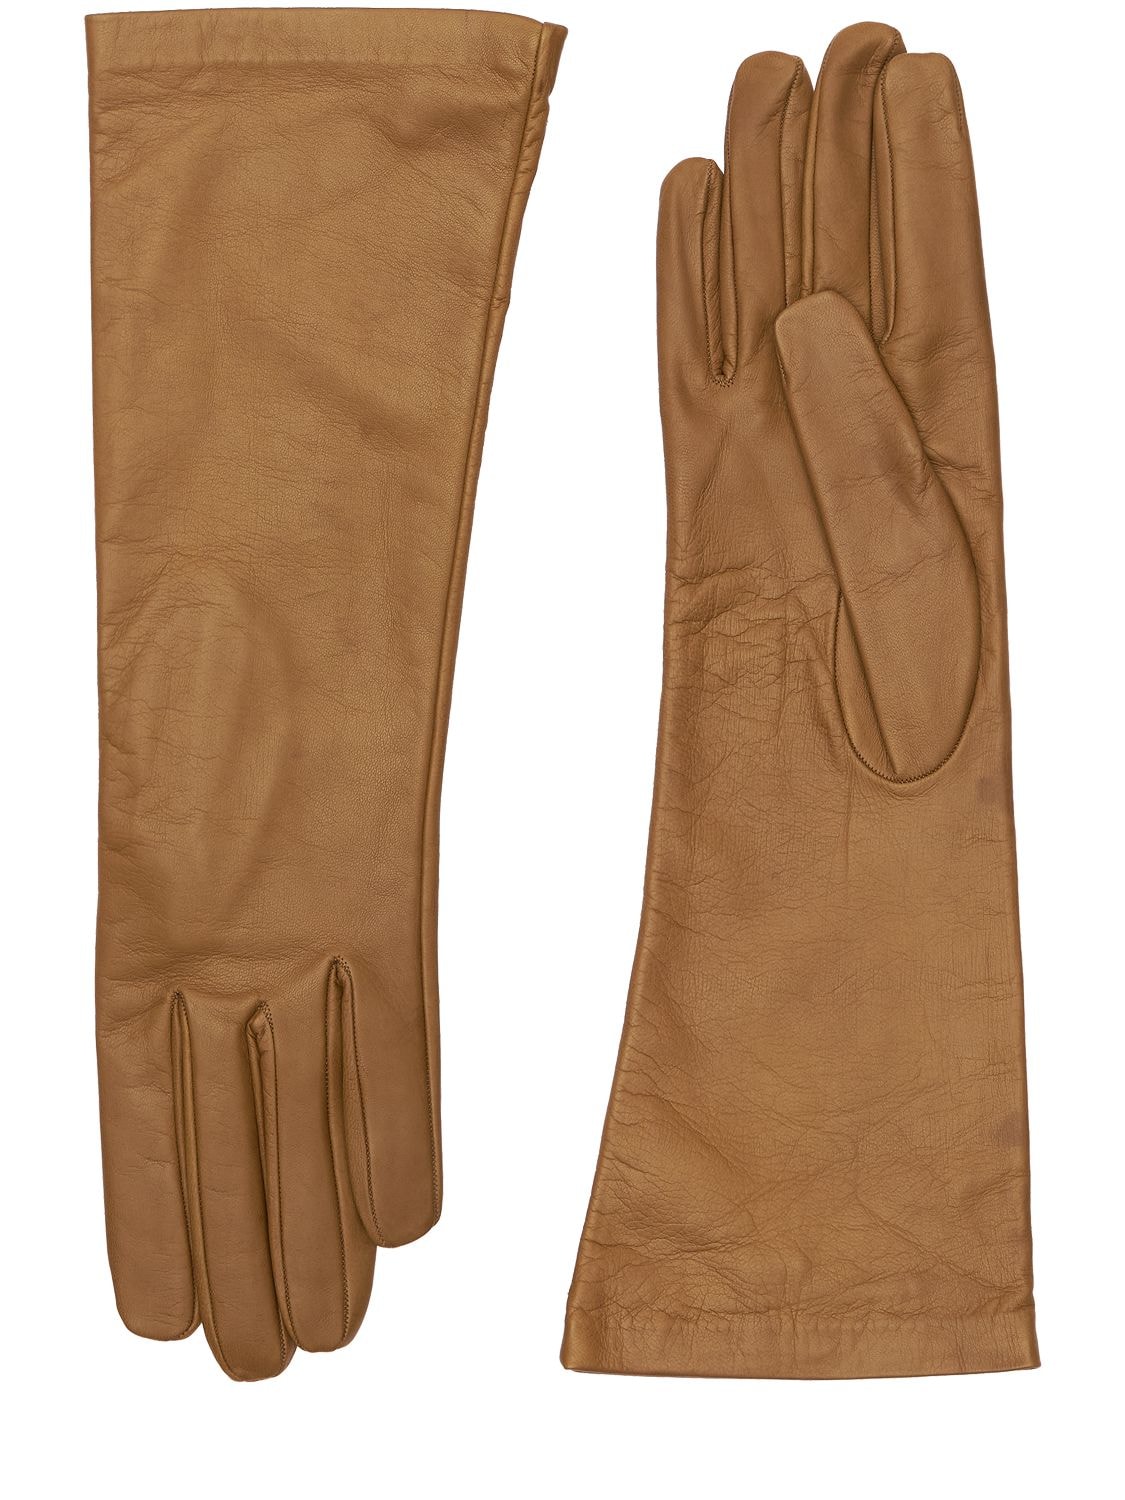 MARIO PORTOLANO Leather Gloves